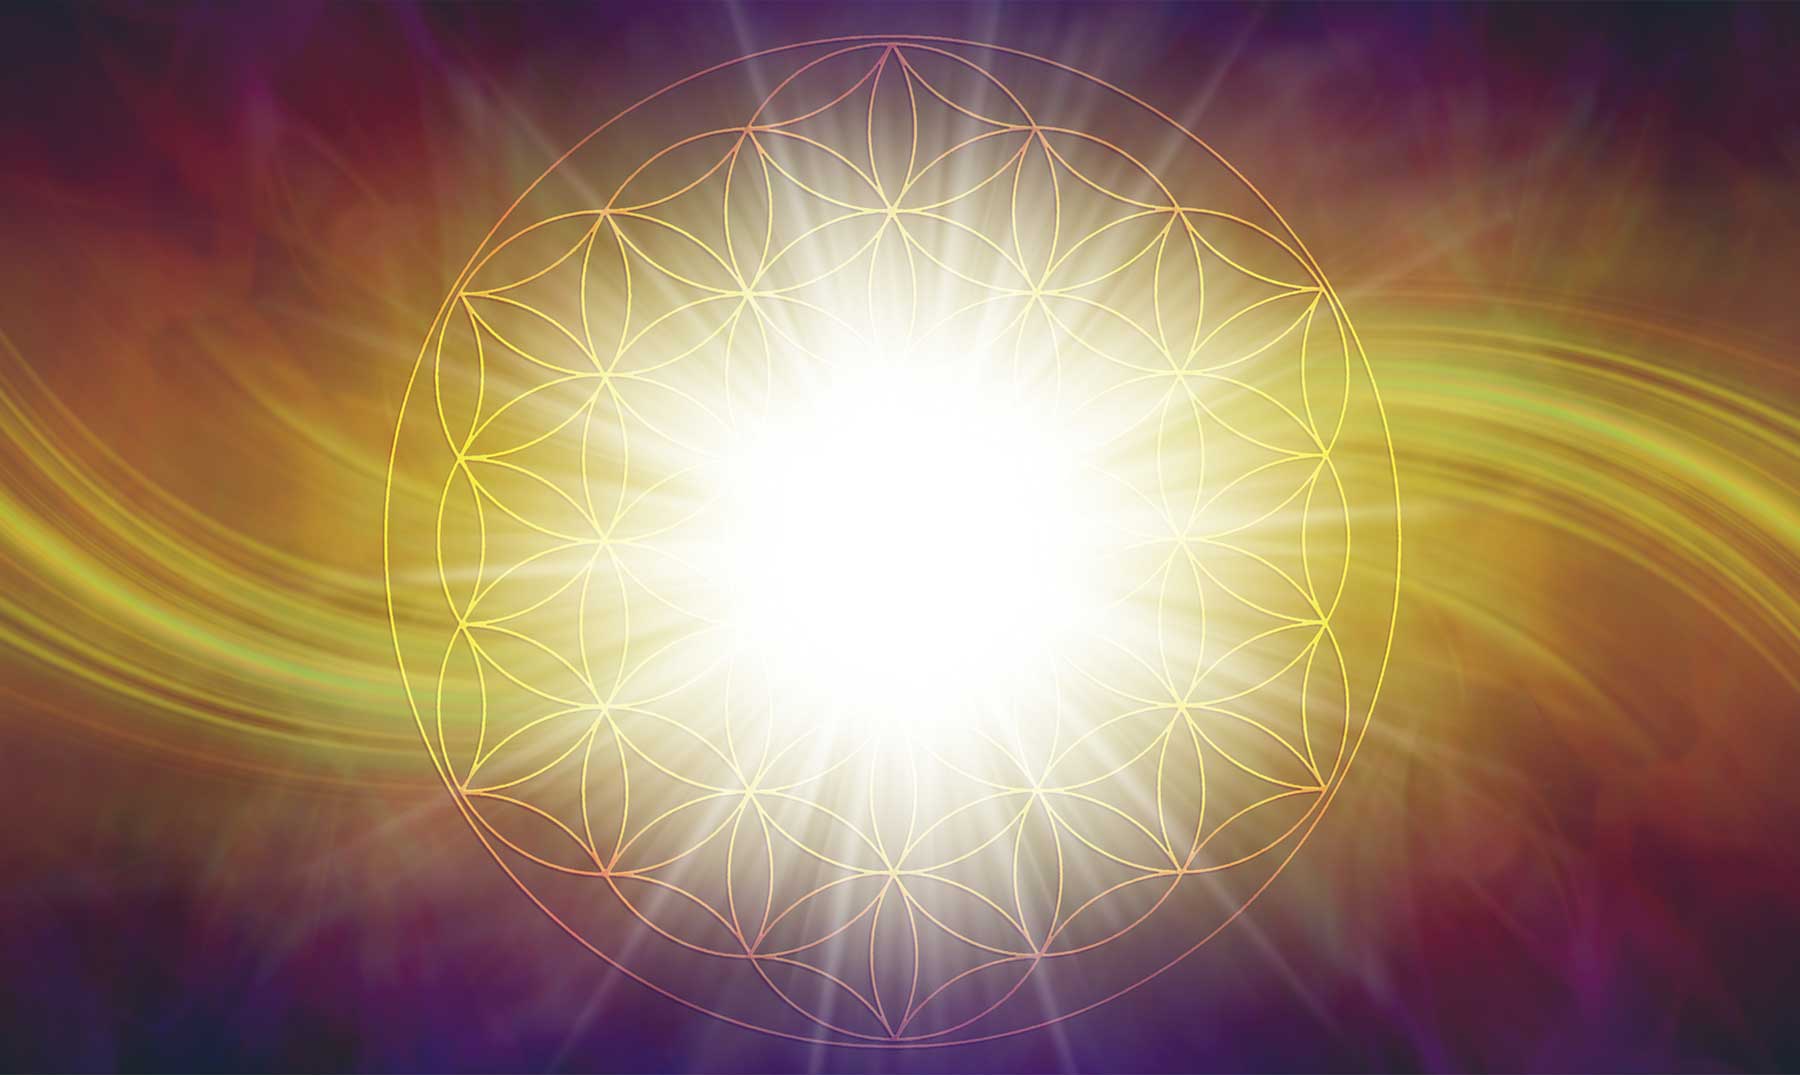 Espiral Aurea | 15 curiosidades de este elemento de la geometría sagrada